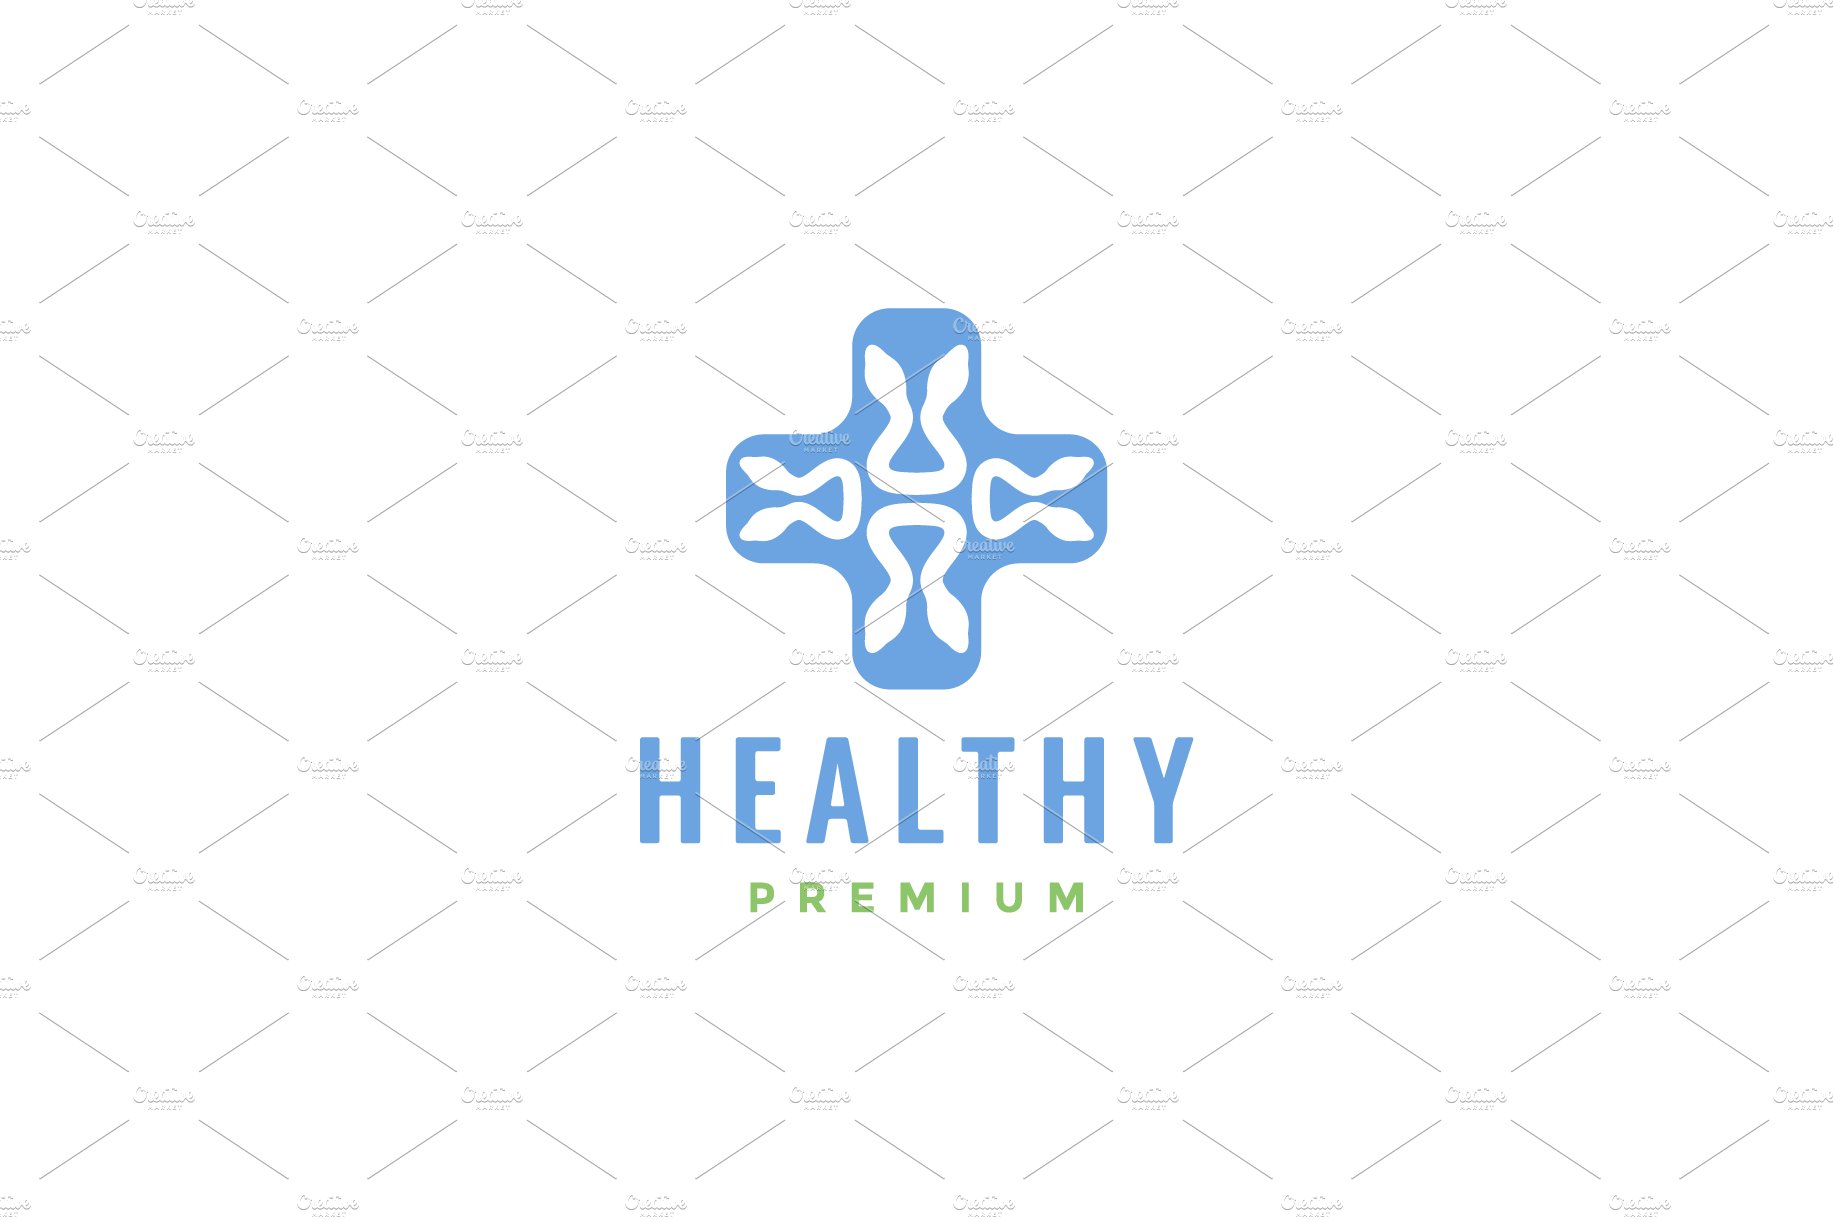 cross health medical snake logo cover image.